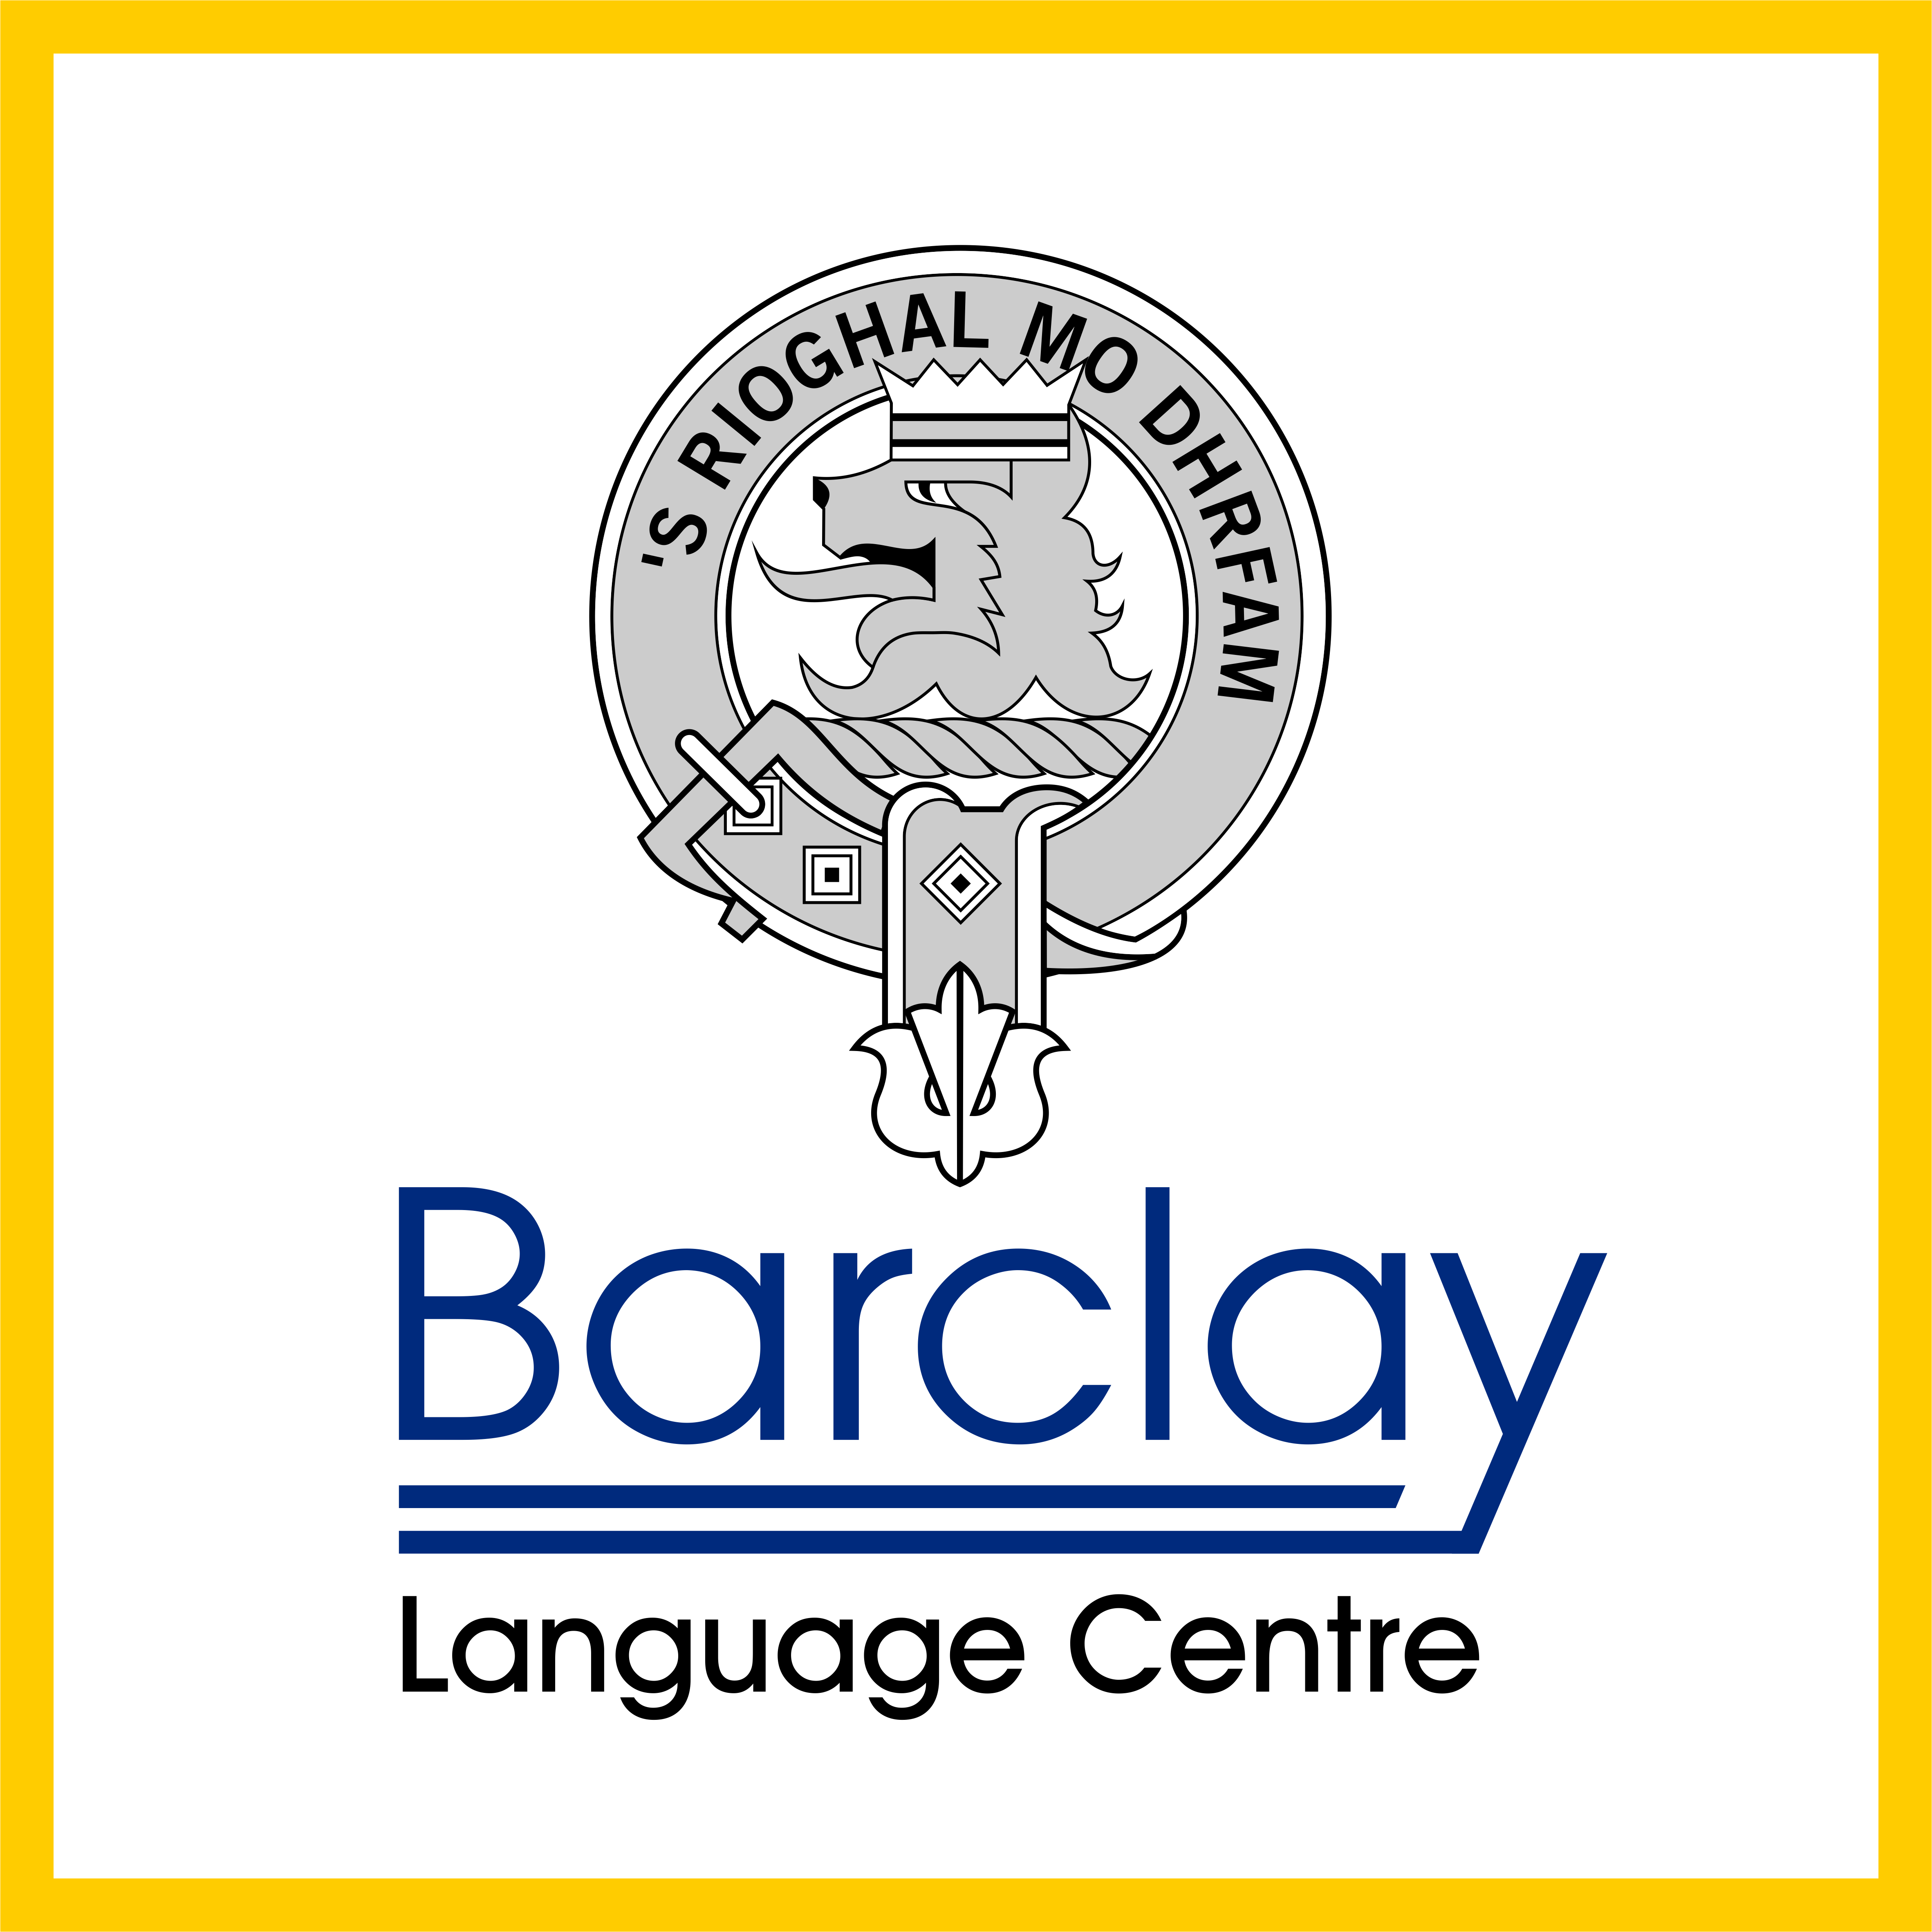 Barclay Languages Centre